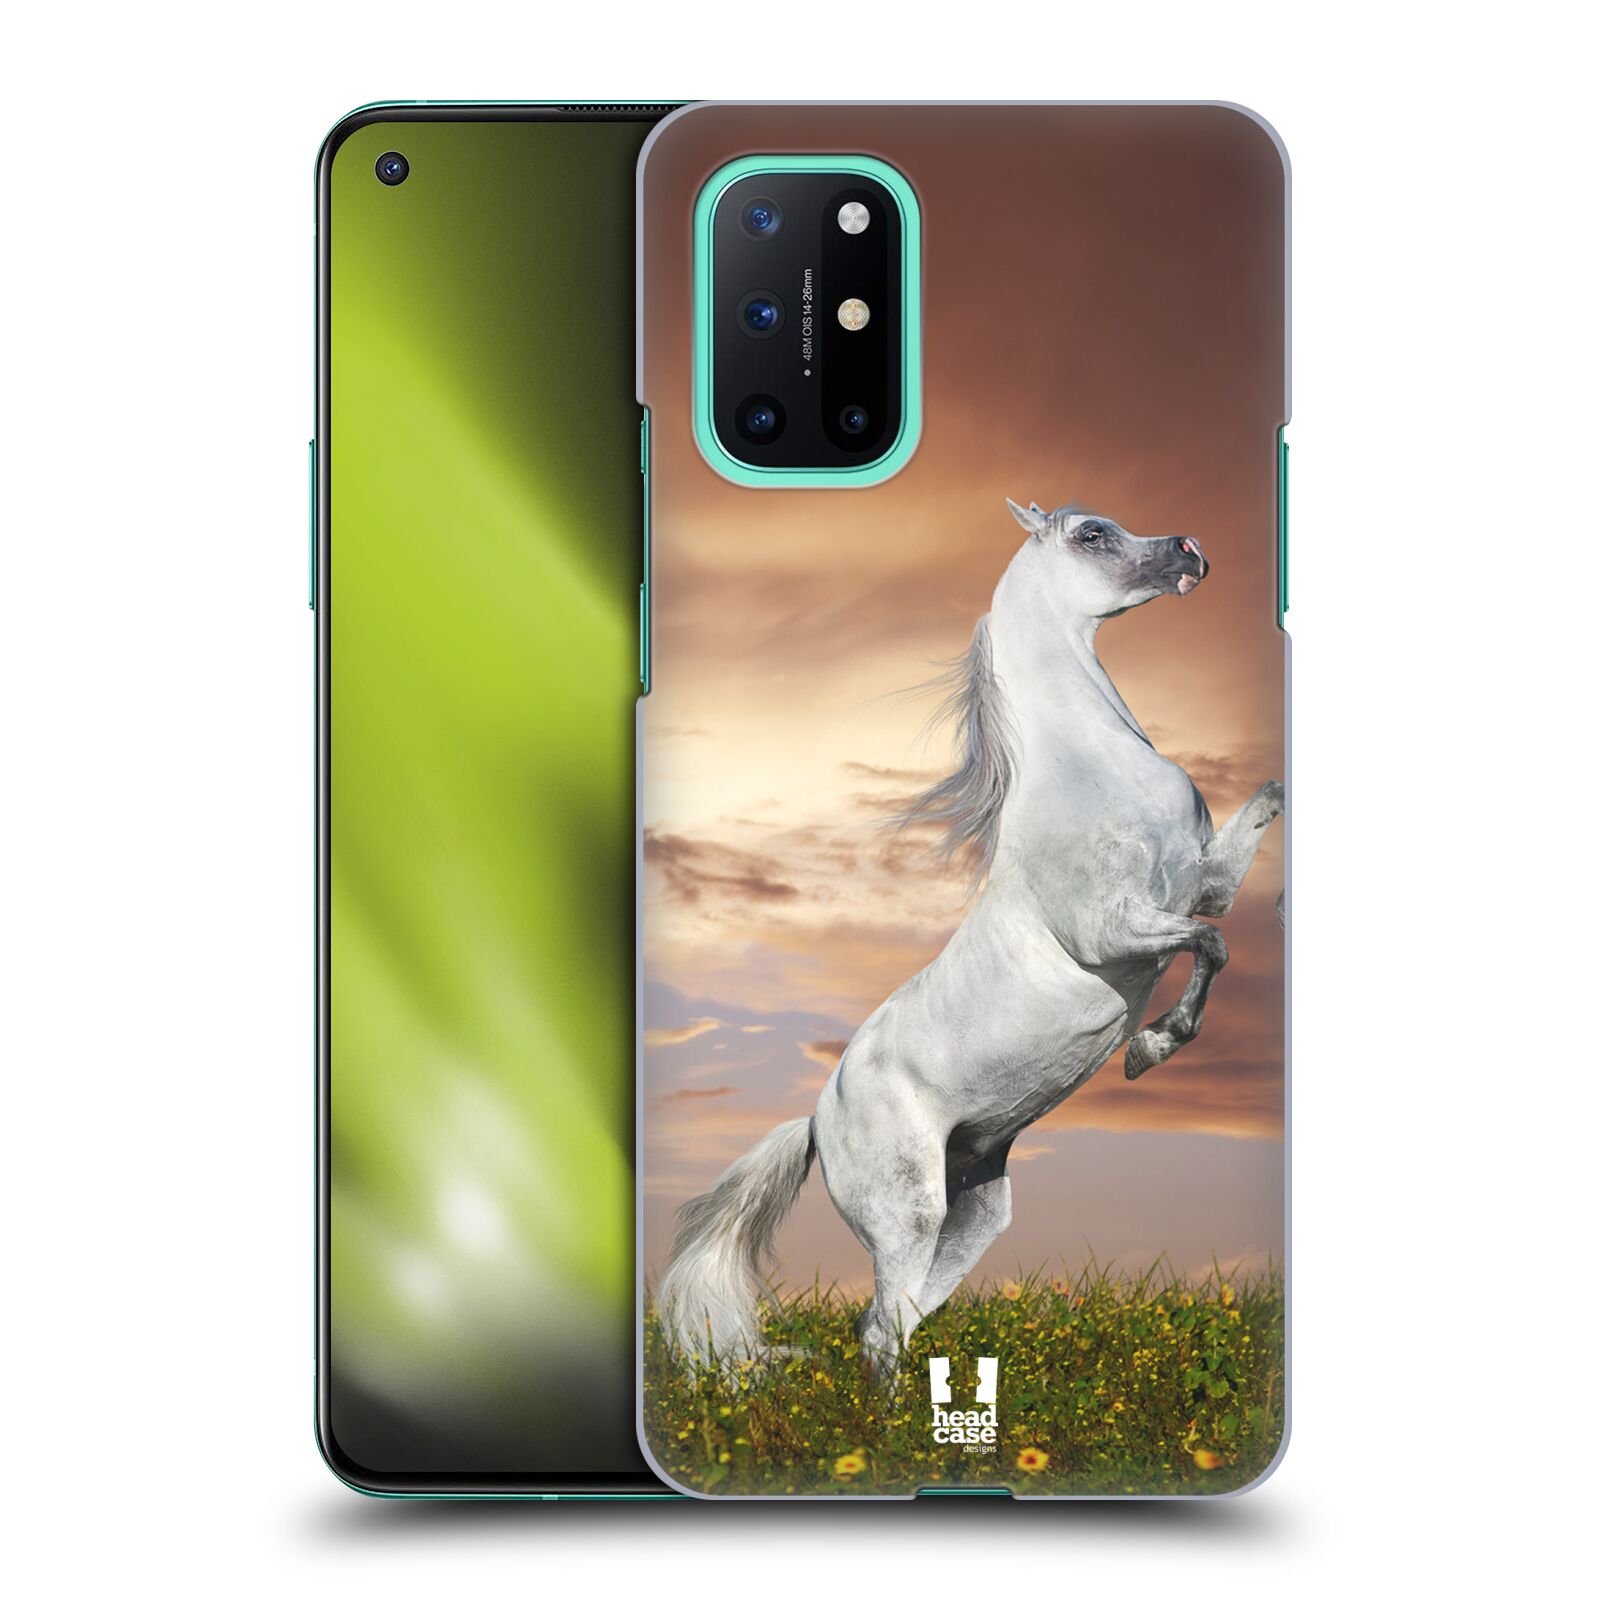 Zadní obal pro mobil OnePlus 8T - HEAD CASE - Svět zvířat divoký kůň